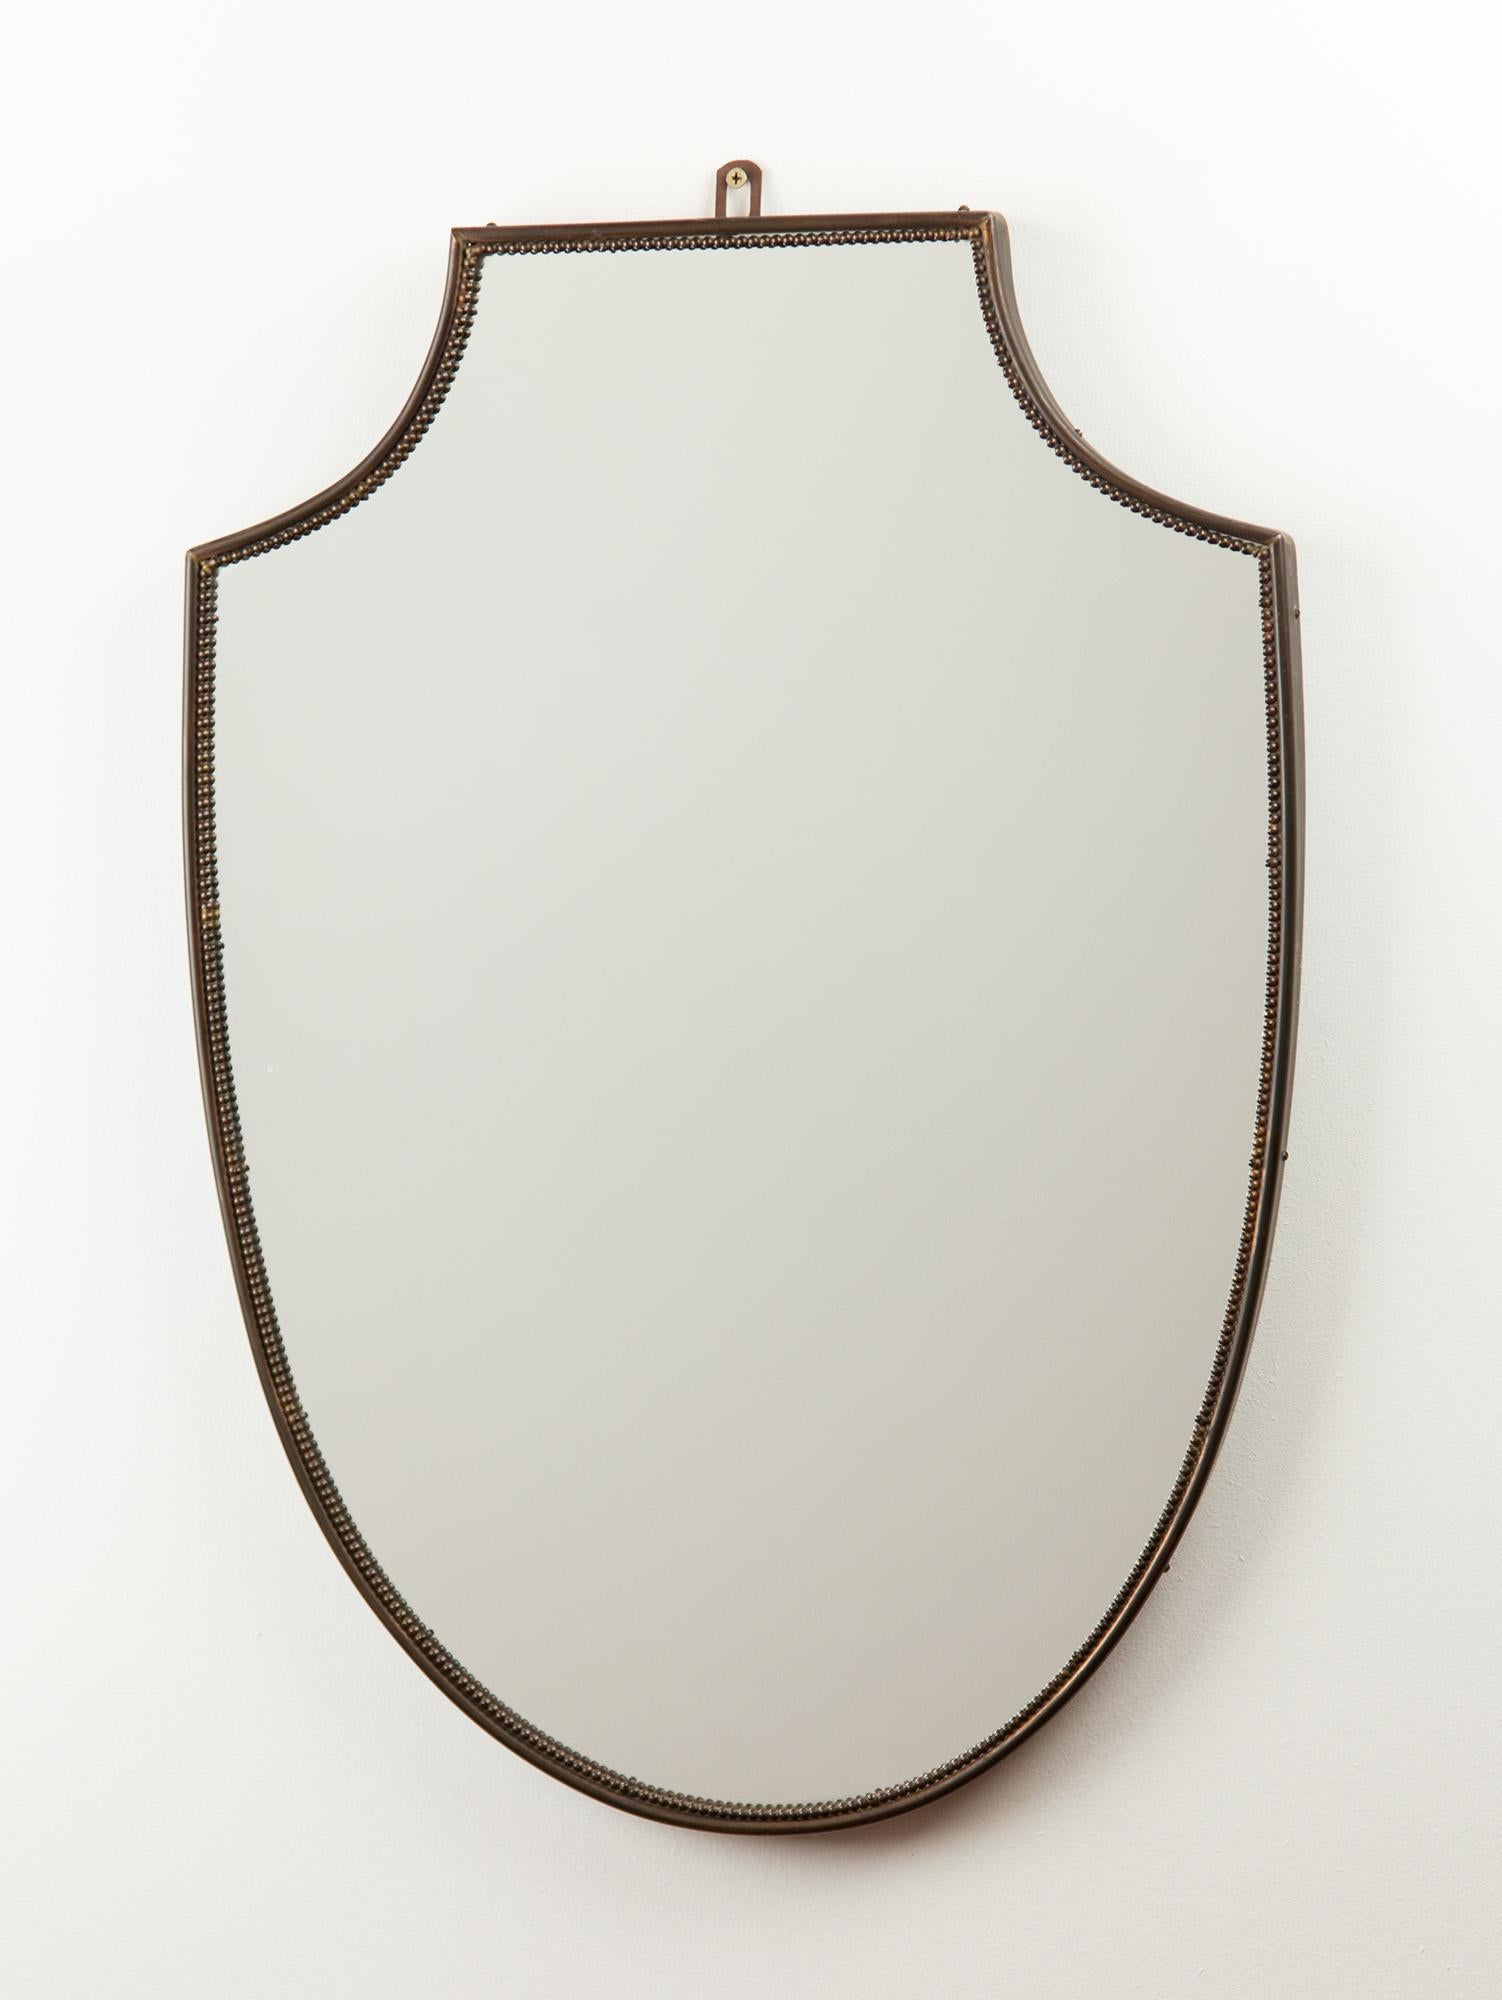 Italienischer Vintage-Spiegel aus Messing mit einer Einfassung aus Messingperlen. Die klassische Form verkörpert das Design der italienischen Moderne. Der Messingrahmen hält das Glas und die Holzunterlage mit einem Haken am oberen Rahmen.